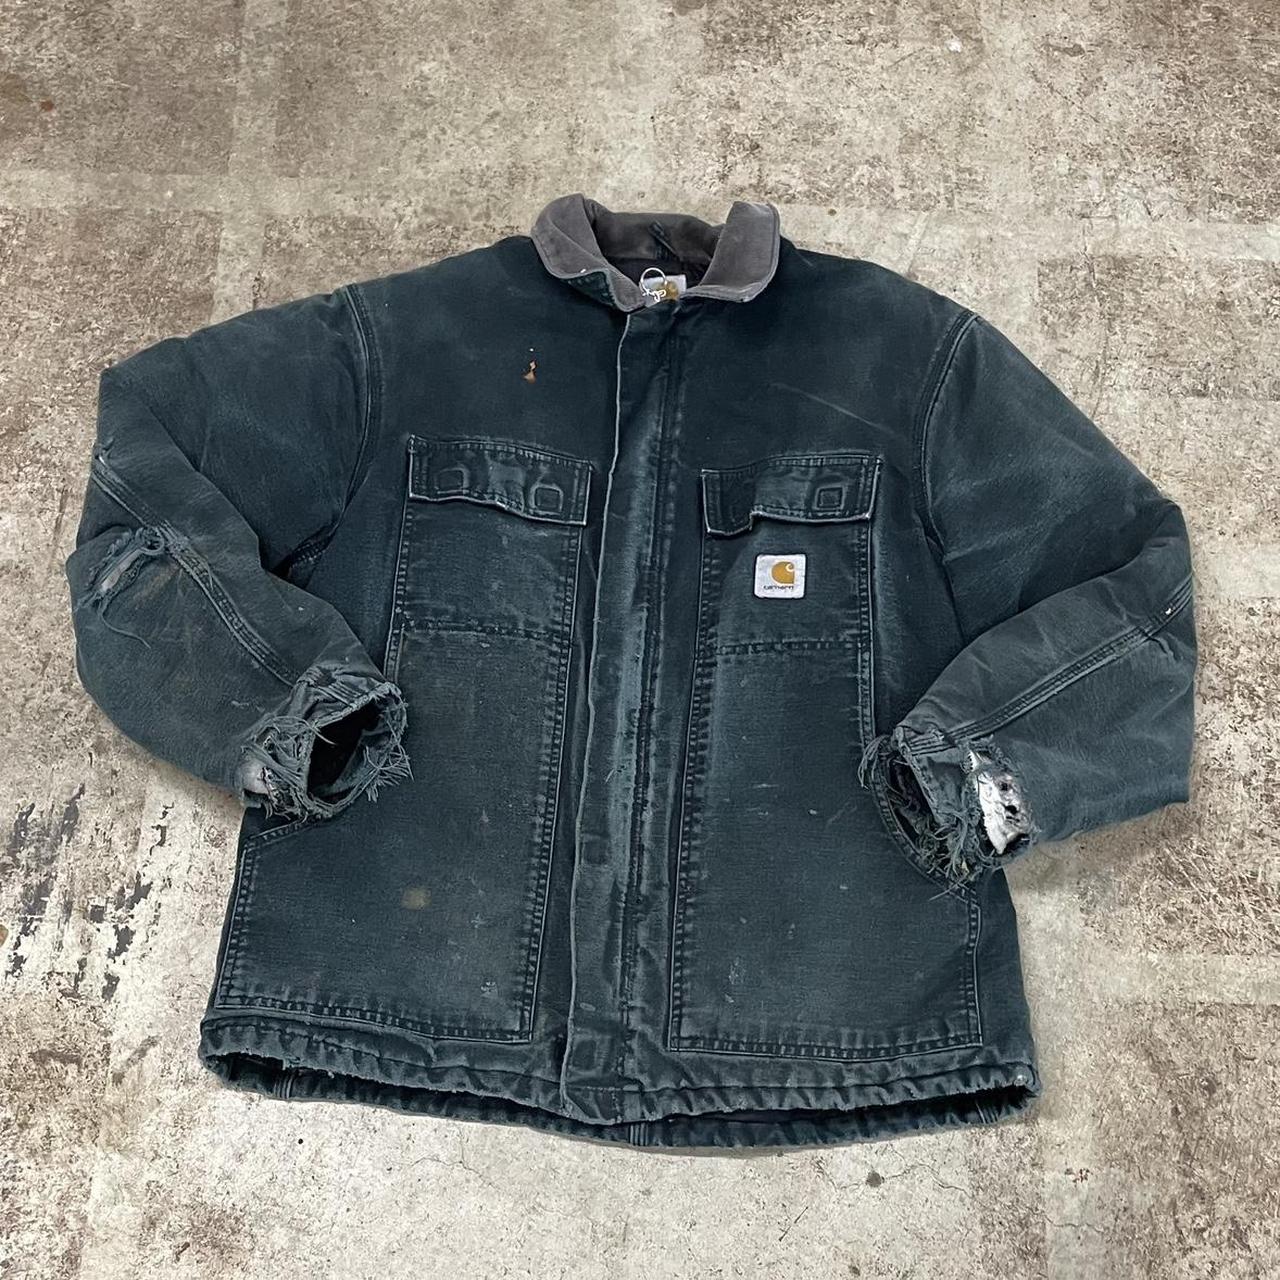 Black carhartt jacket 44 - Depop